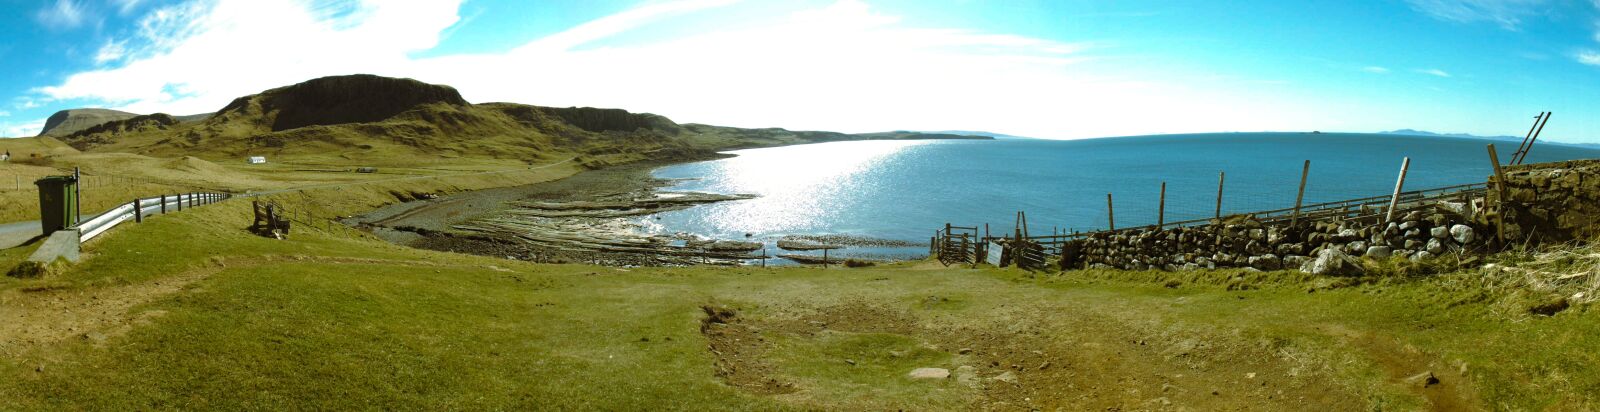 Fujifilm FinePix SL300 sample photo. Scotland, landscape, north photography